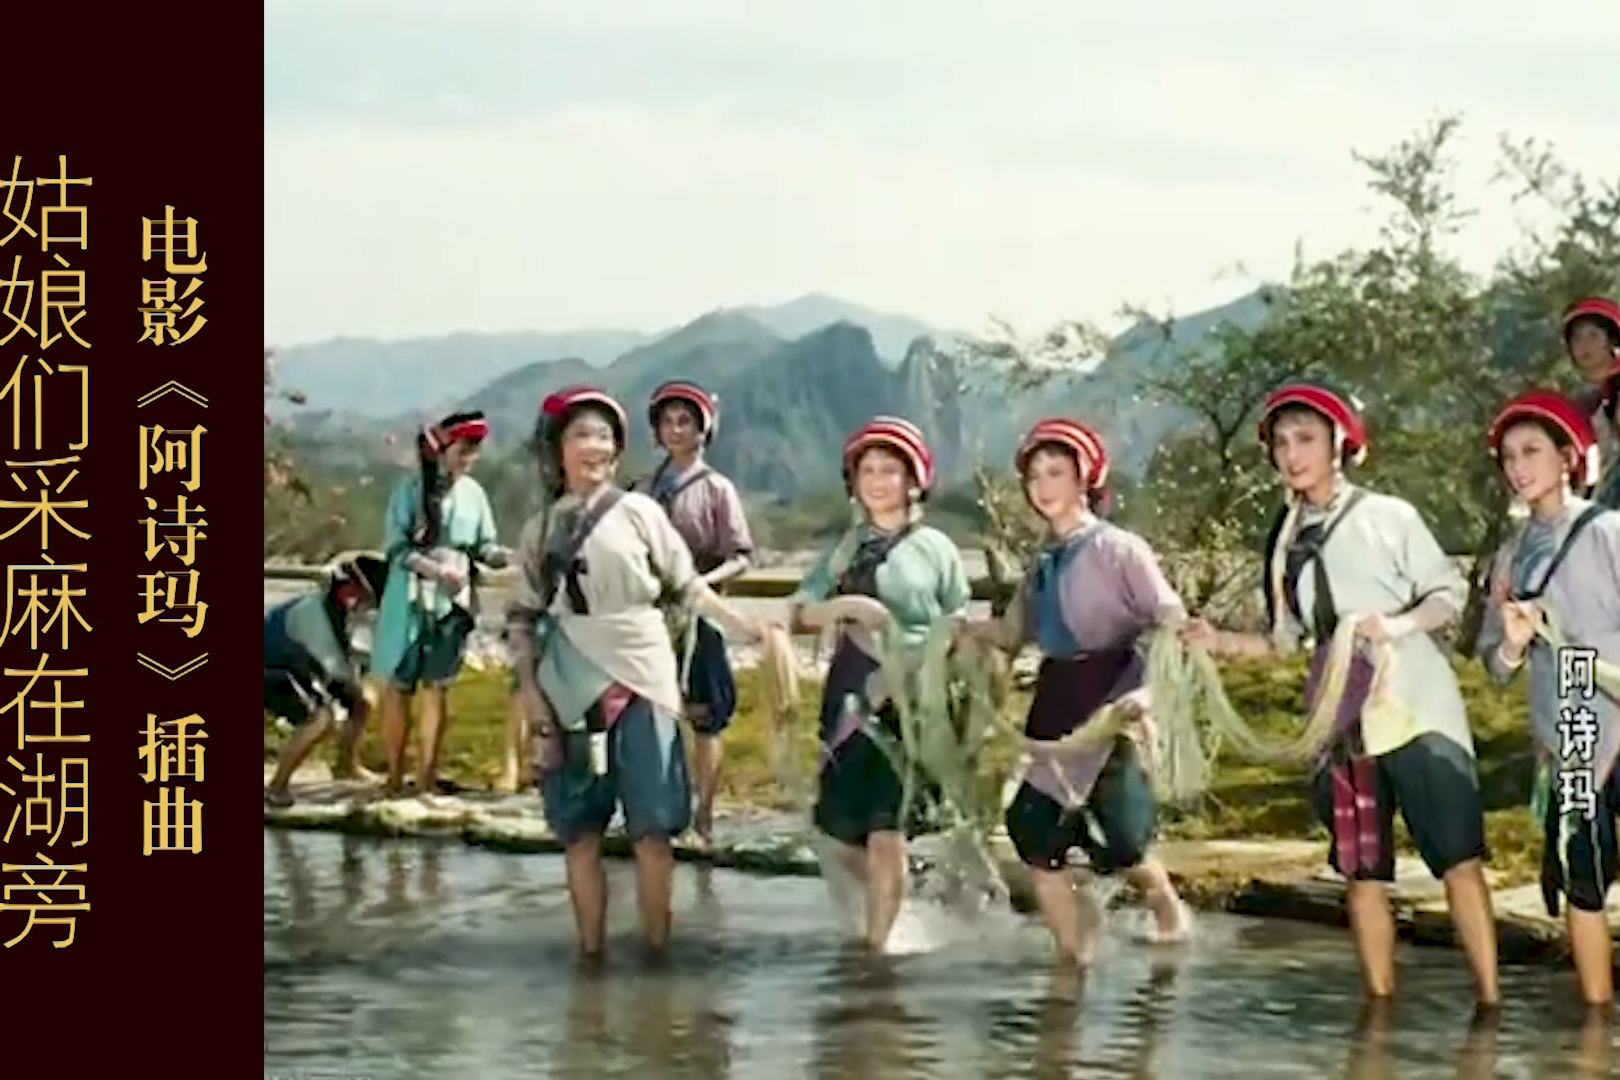 电影《阿诗玛》插曲 姑娘们采麻在湖旁